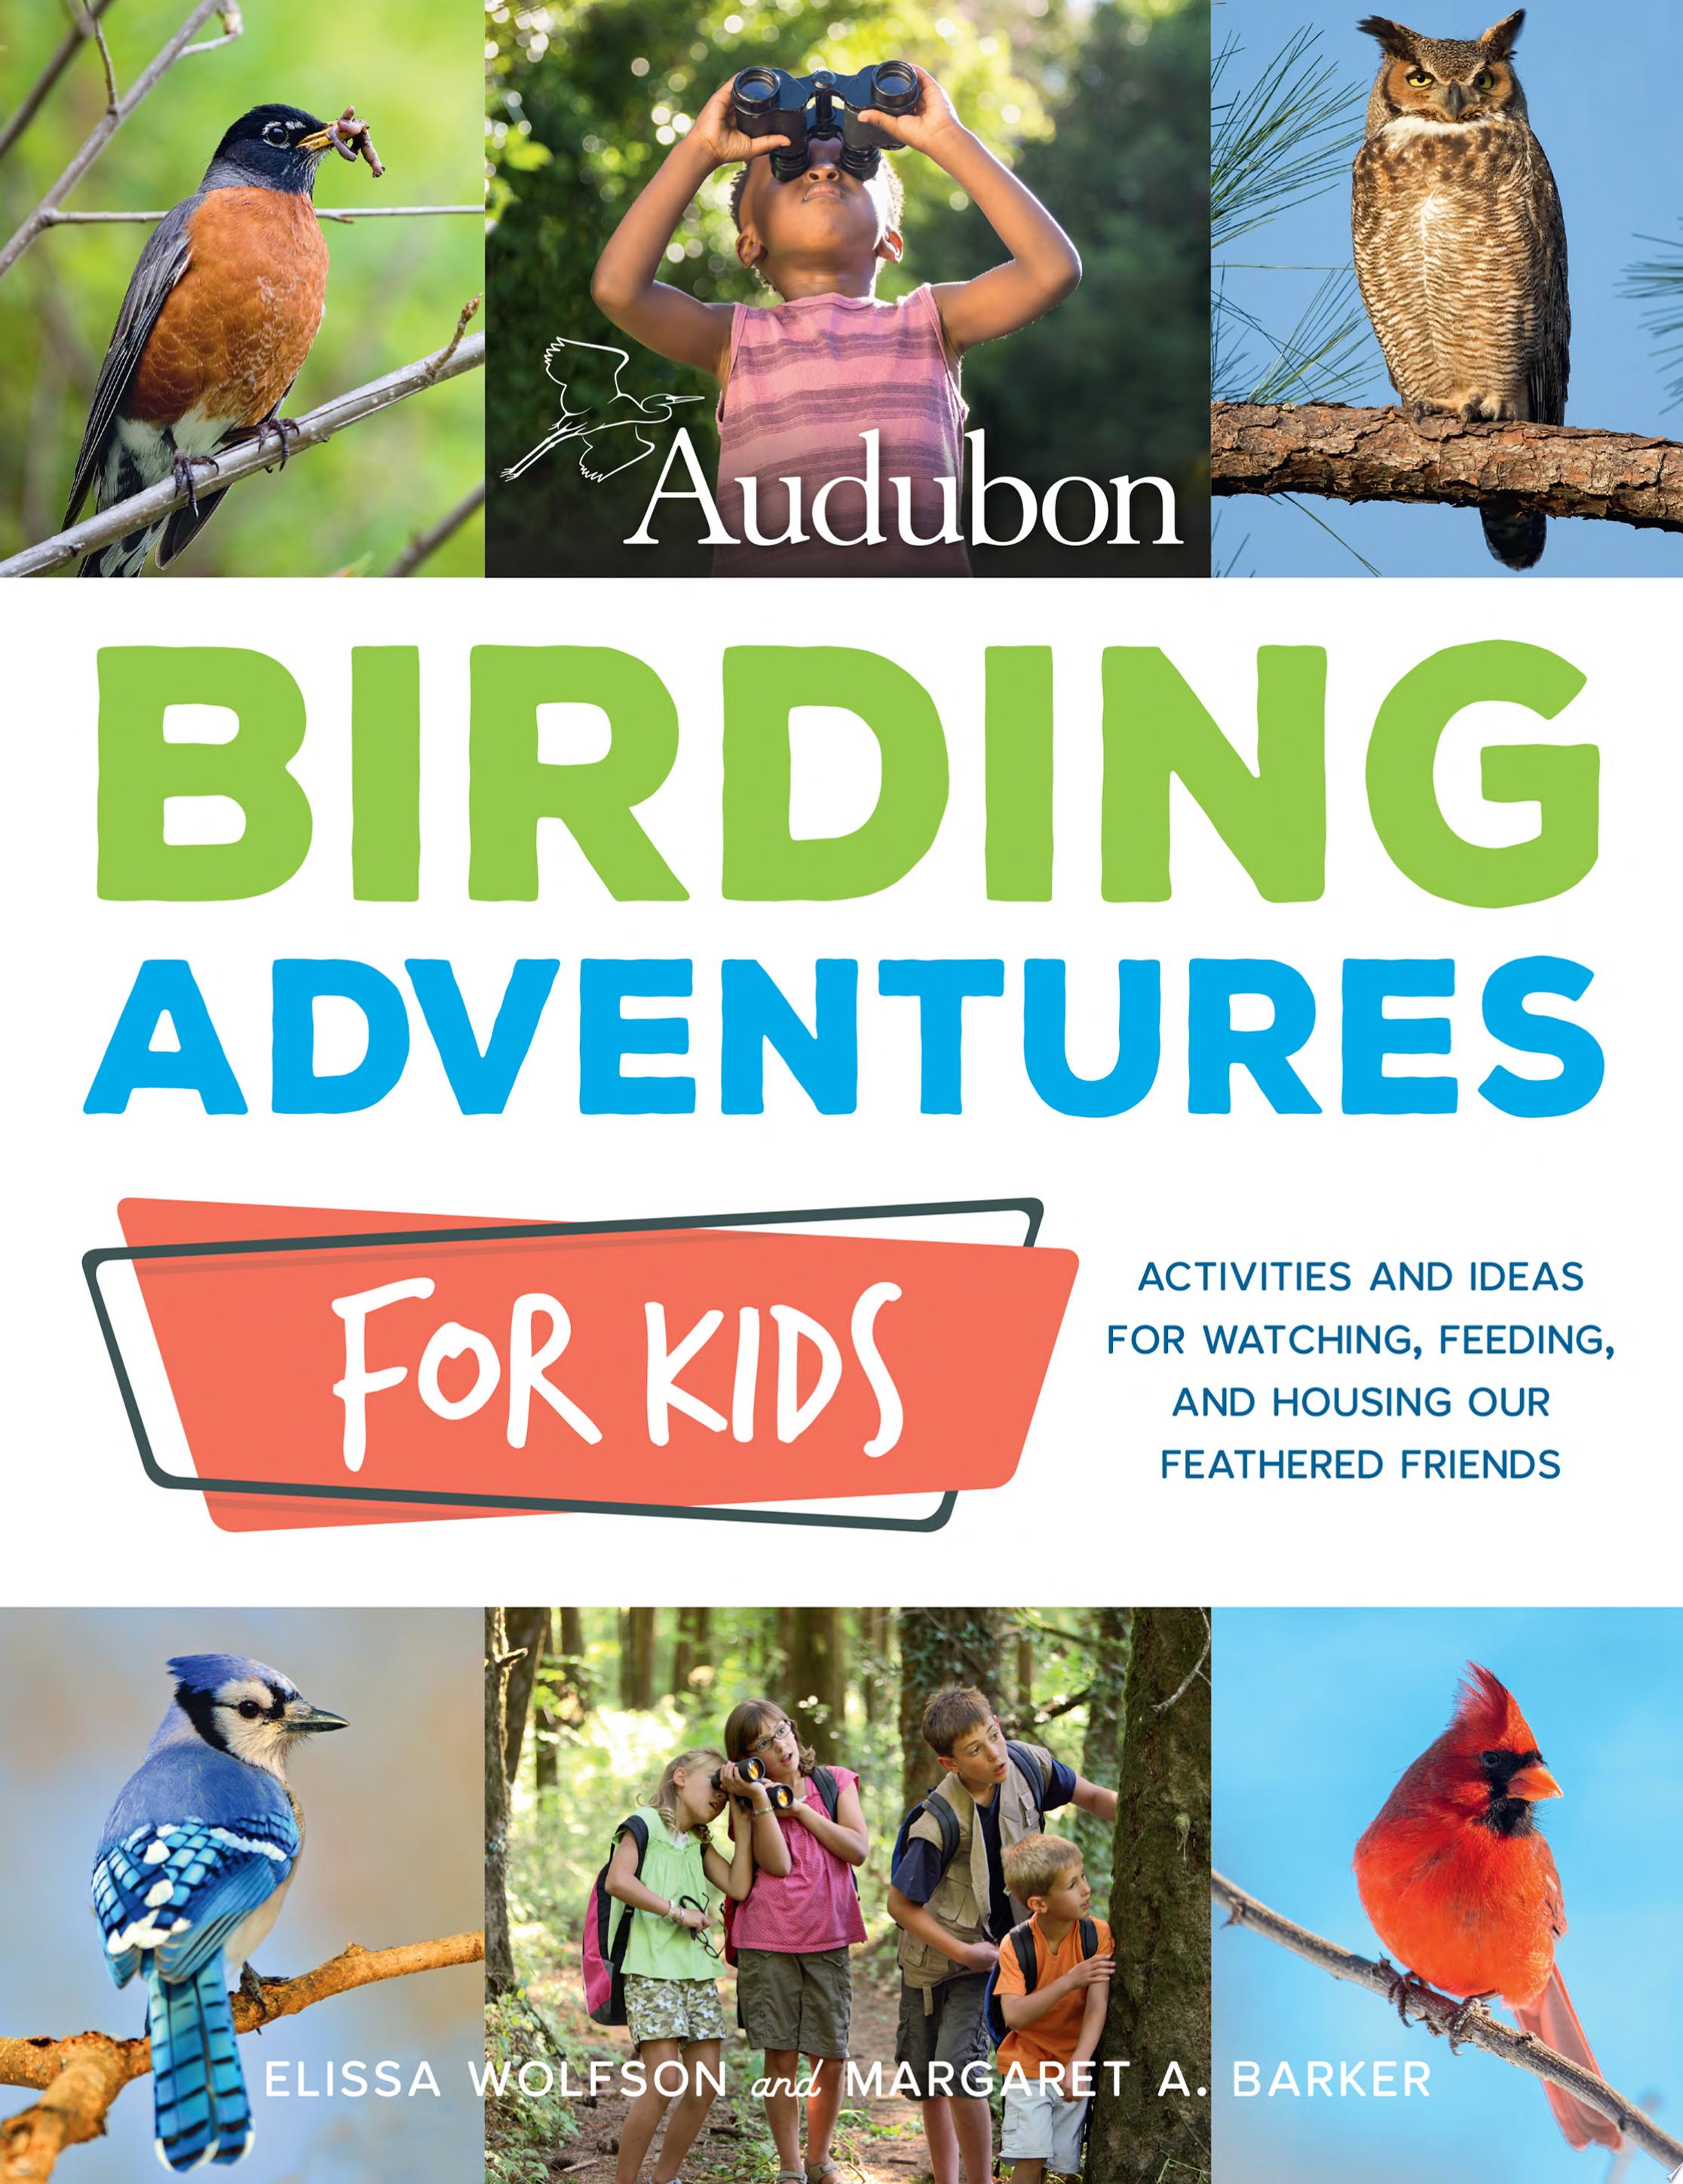 Image for "Audubon Birding Adventures for Kids"